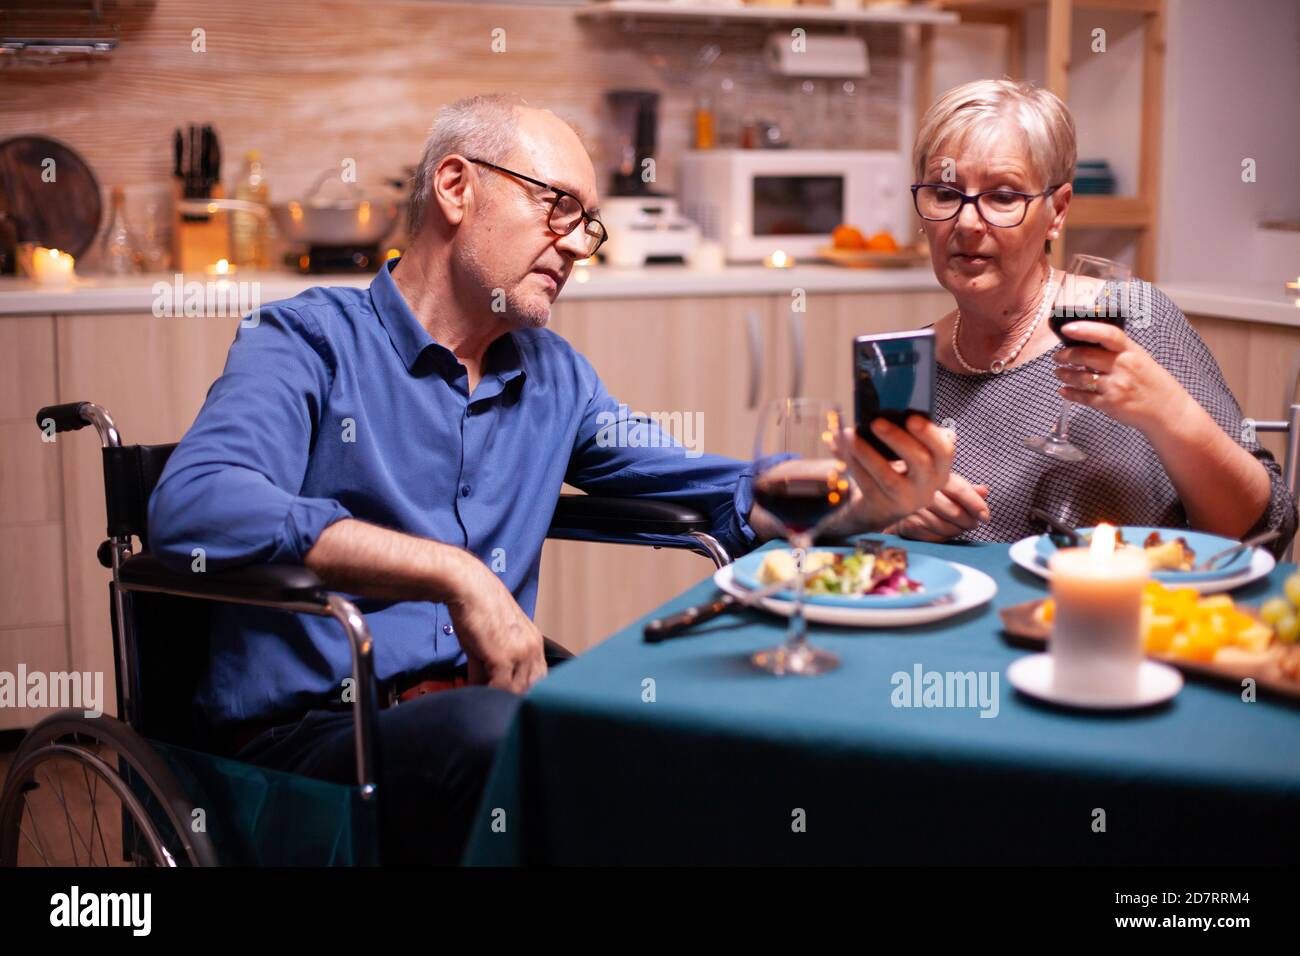 Behinderter Mann mit Smartphone in der Küche beim Essen mit reifen Frau. Bildlauf mit Fotos. Imobilisierter behinderter älterer Ehemann, der am Telefon das festliche Essen genießt. Stockfoto